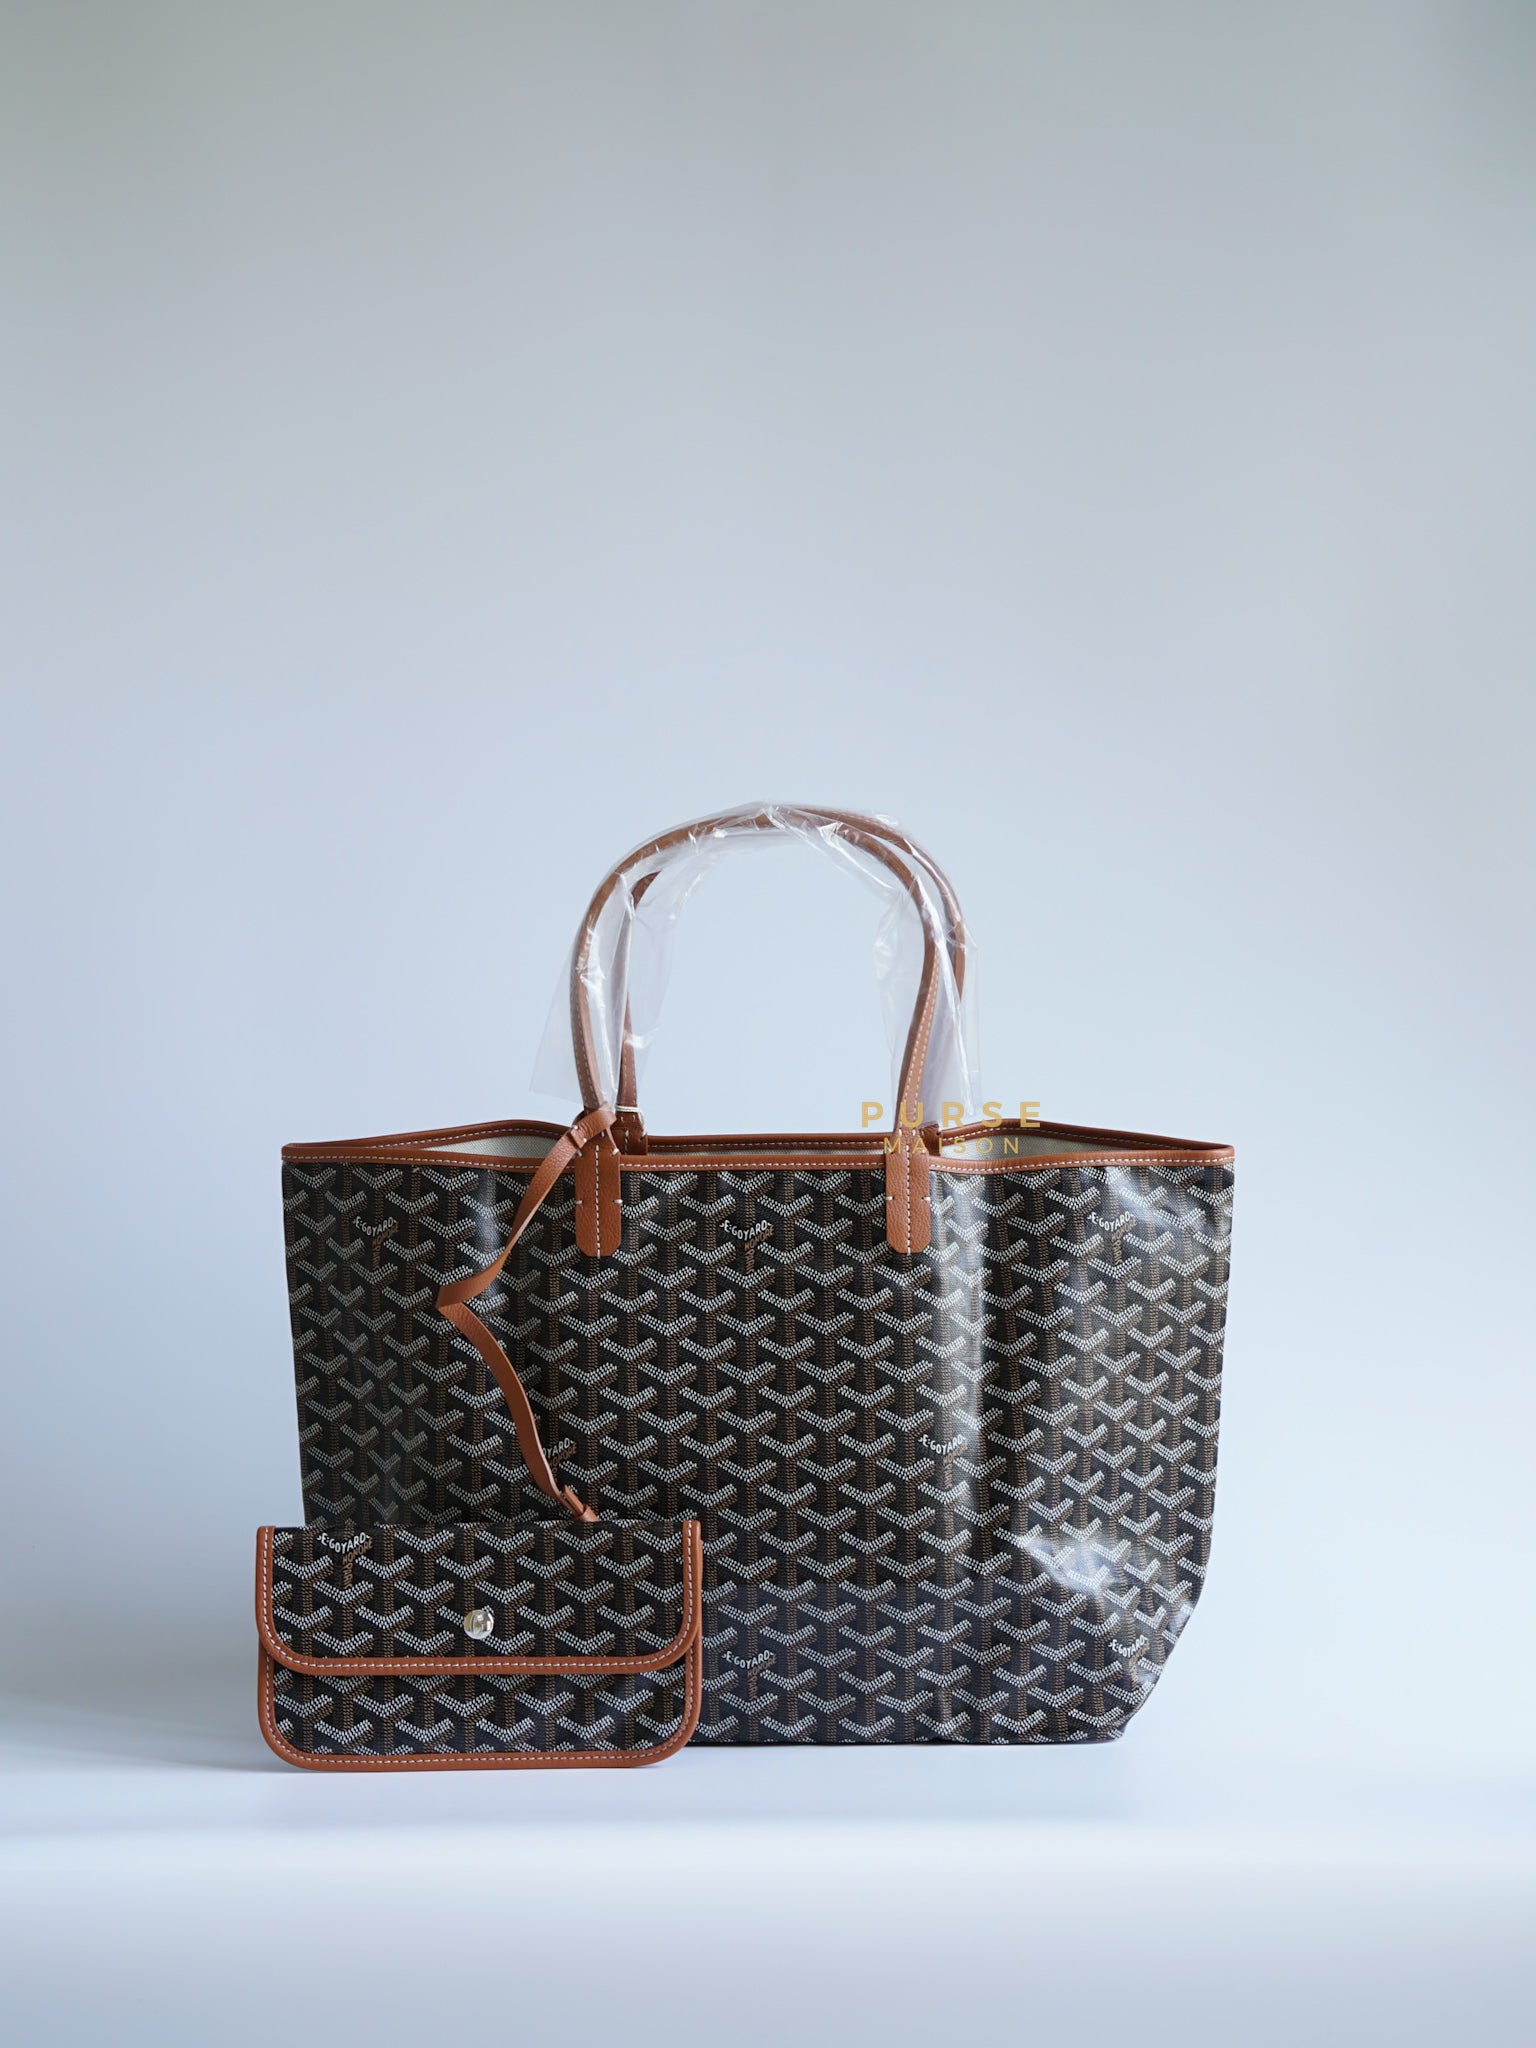 Sac Saint Louis PM Tote Black and Tan (Noir et Naturel) | Purse Maison Luxury Bags Shop